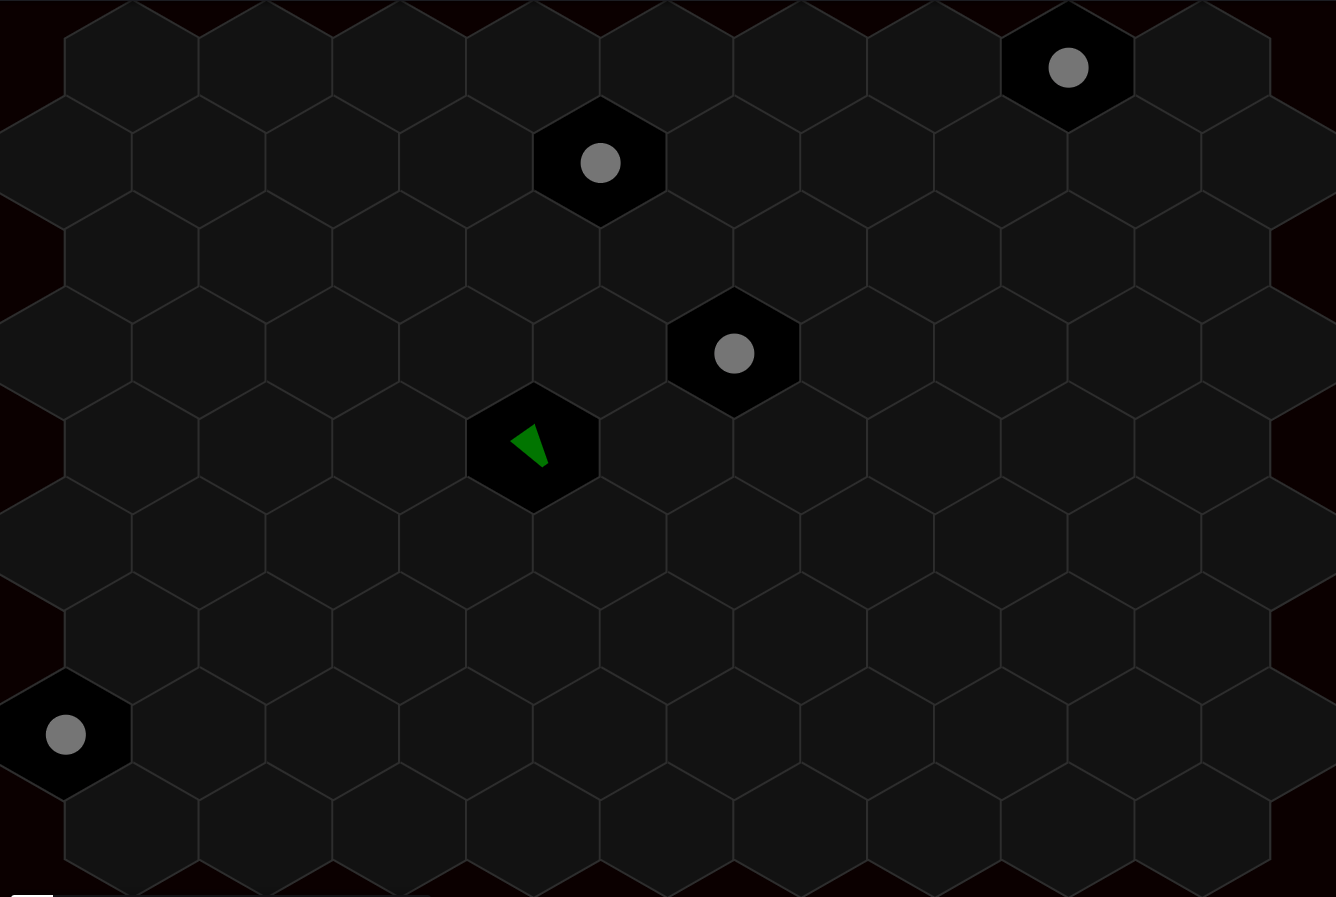 Building a Hexagon Game Board